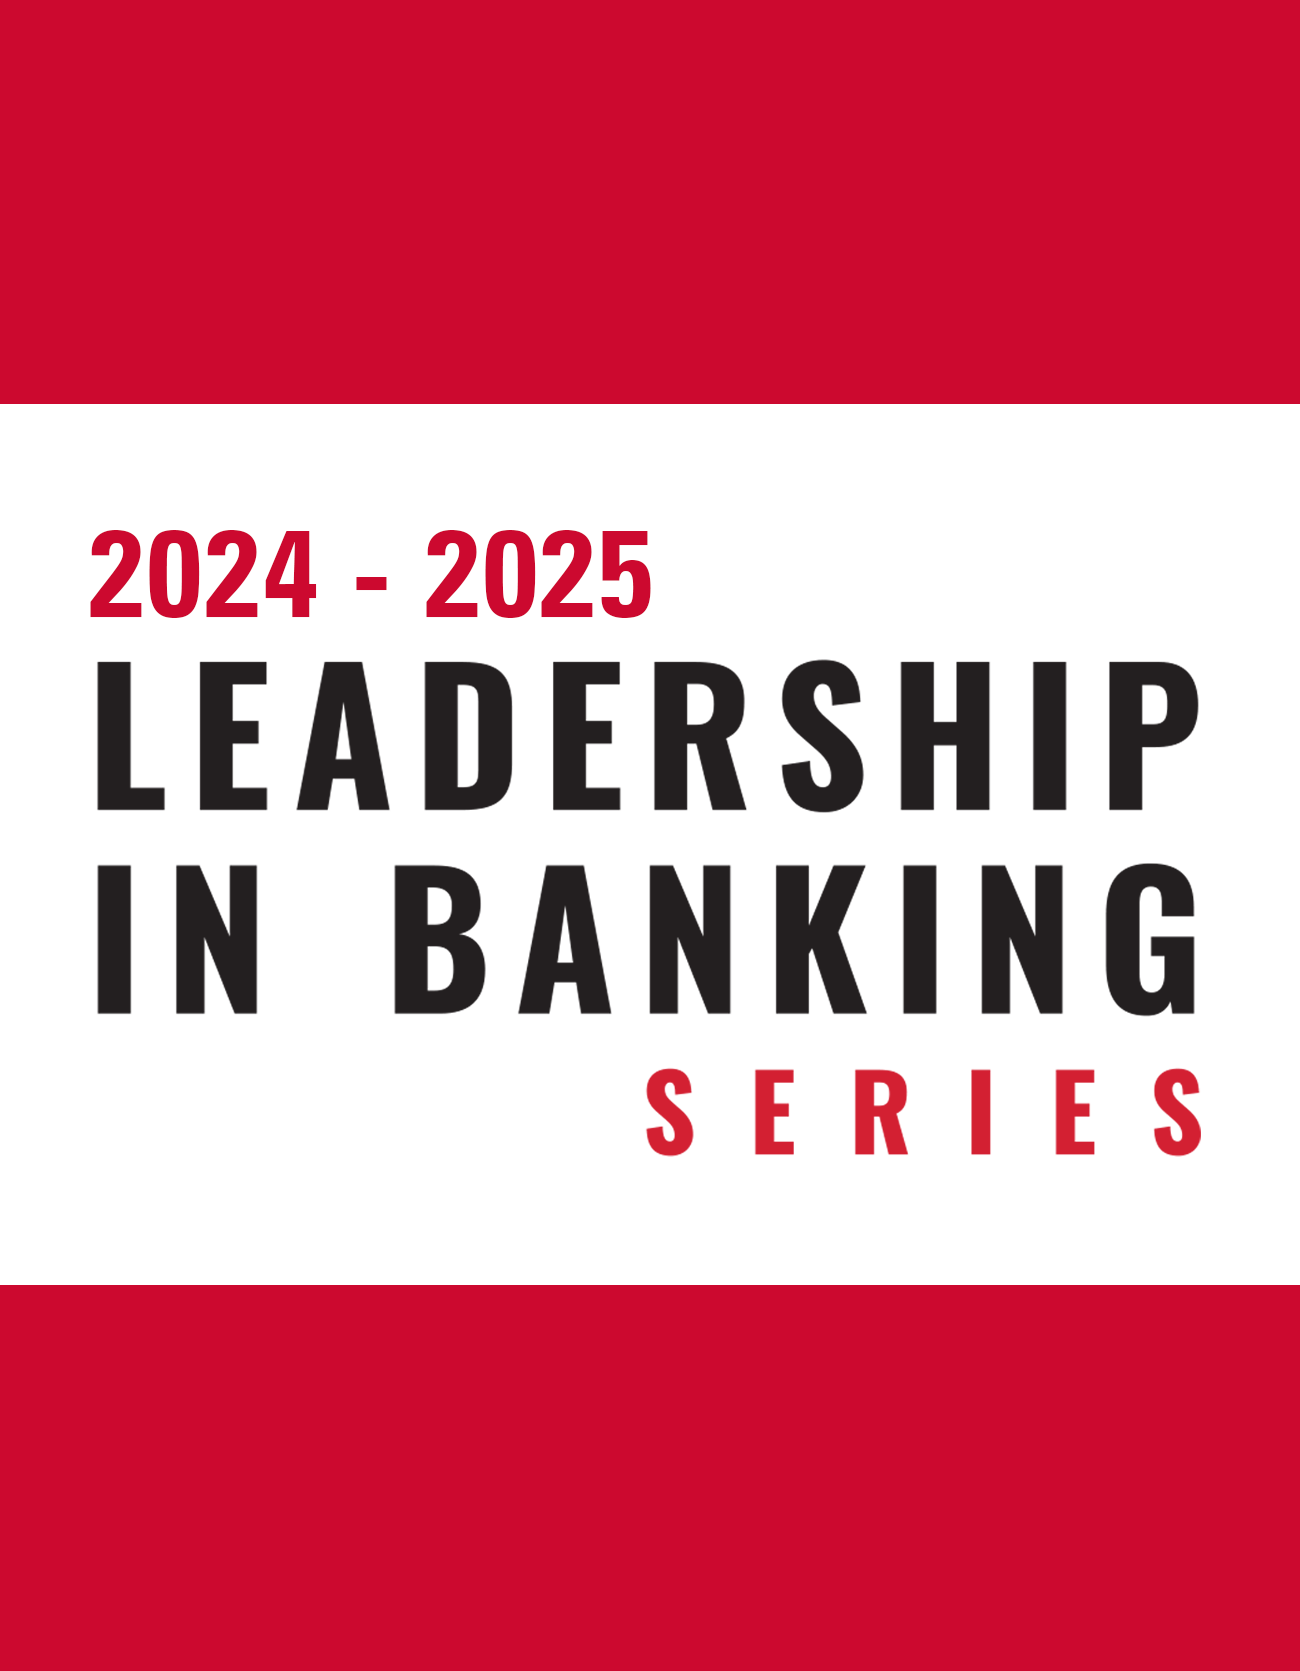 Leadership in Banking Series